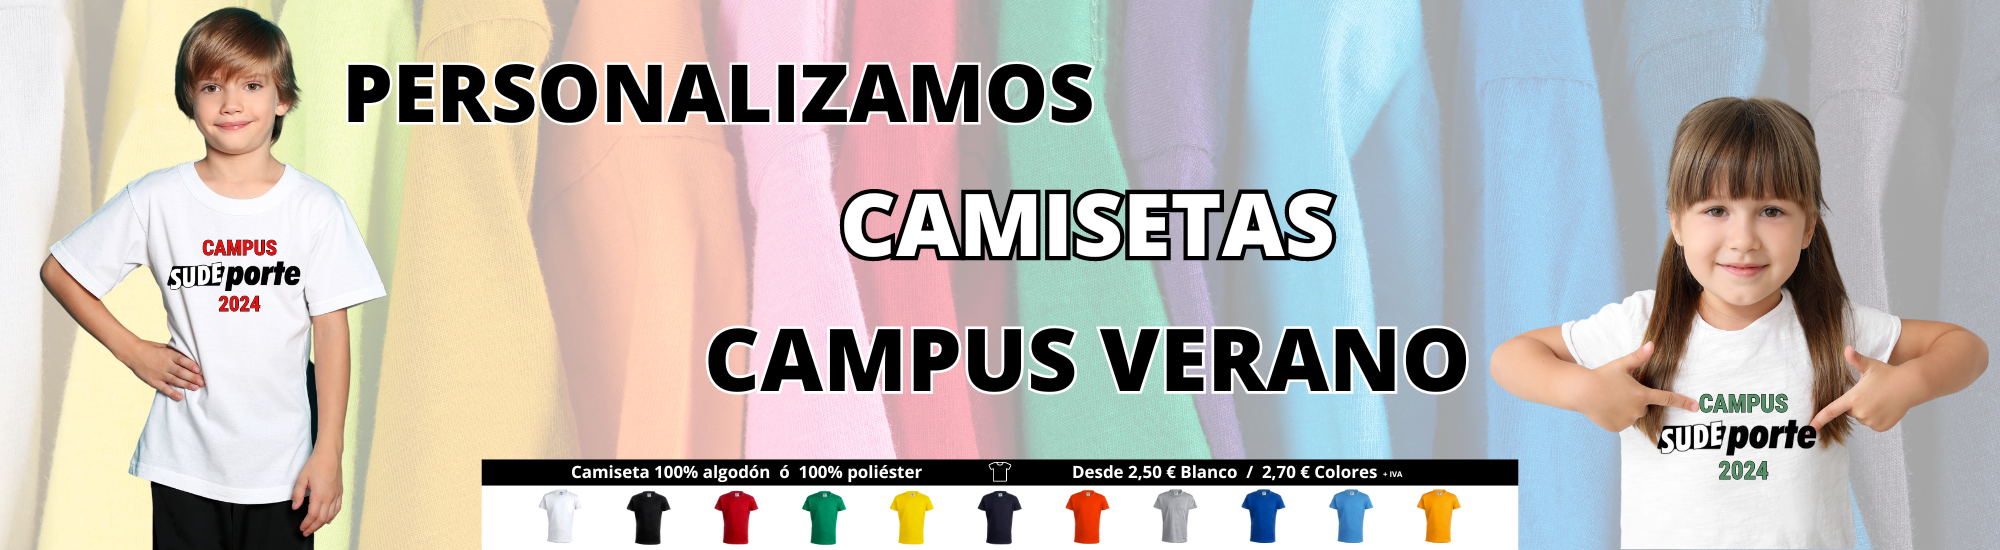 Camisetas campus de verano